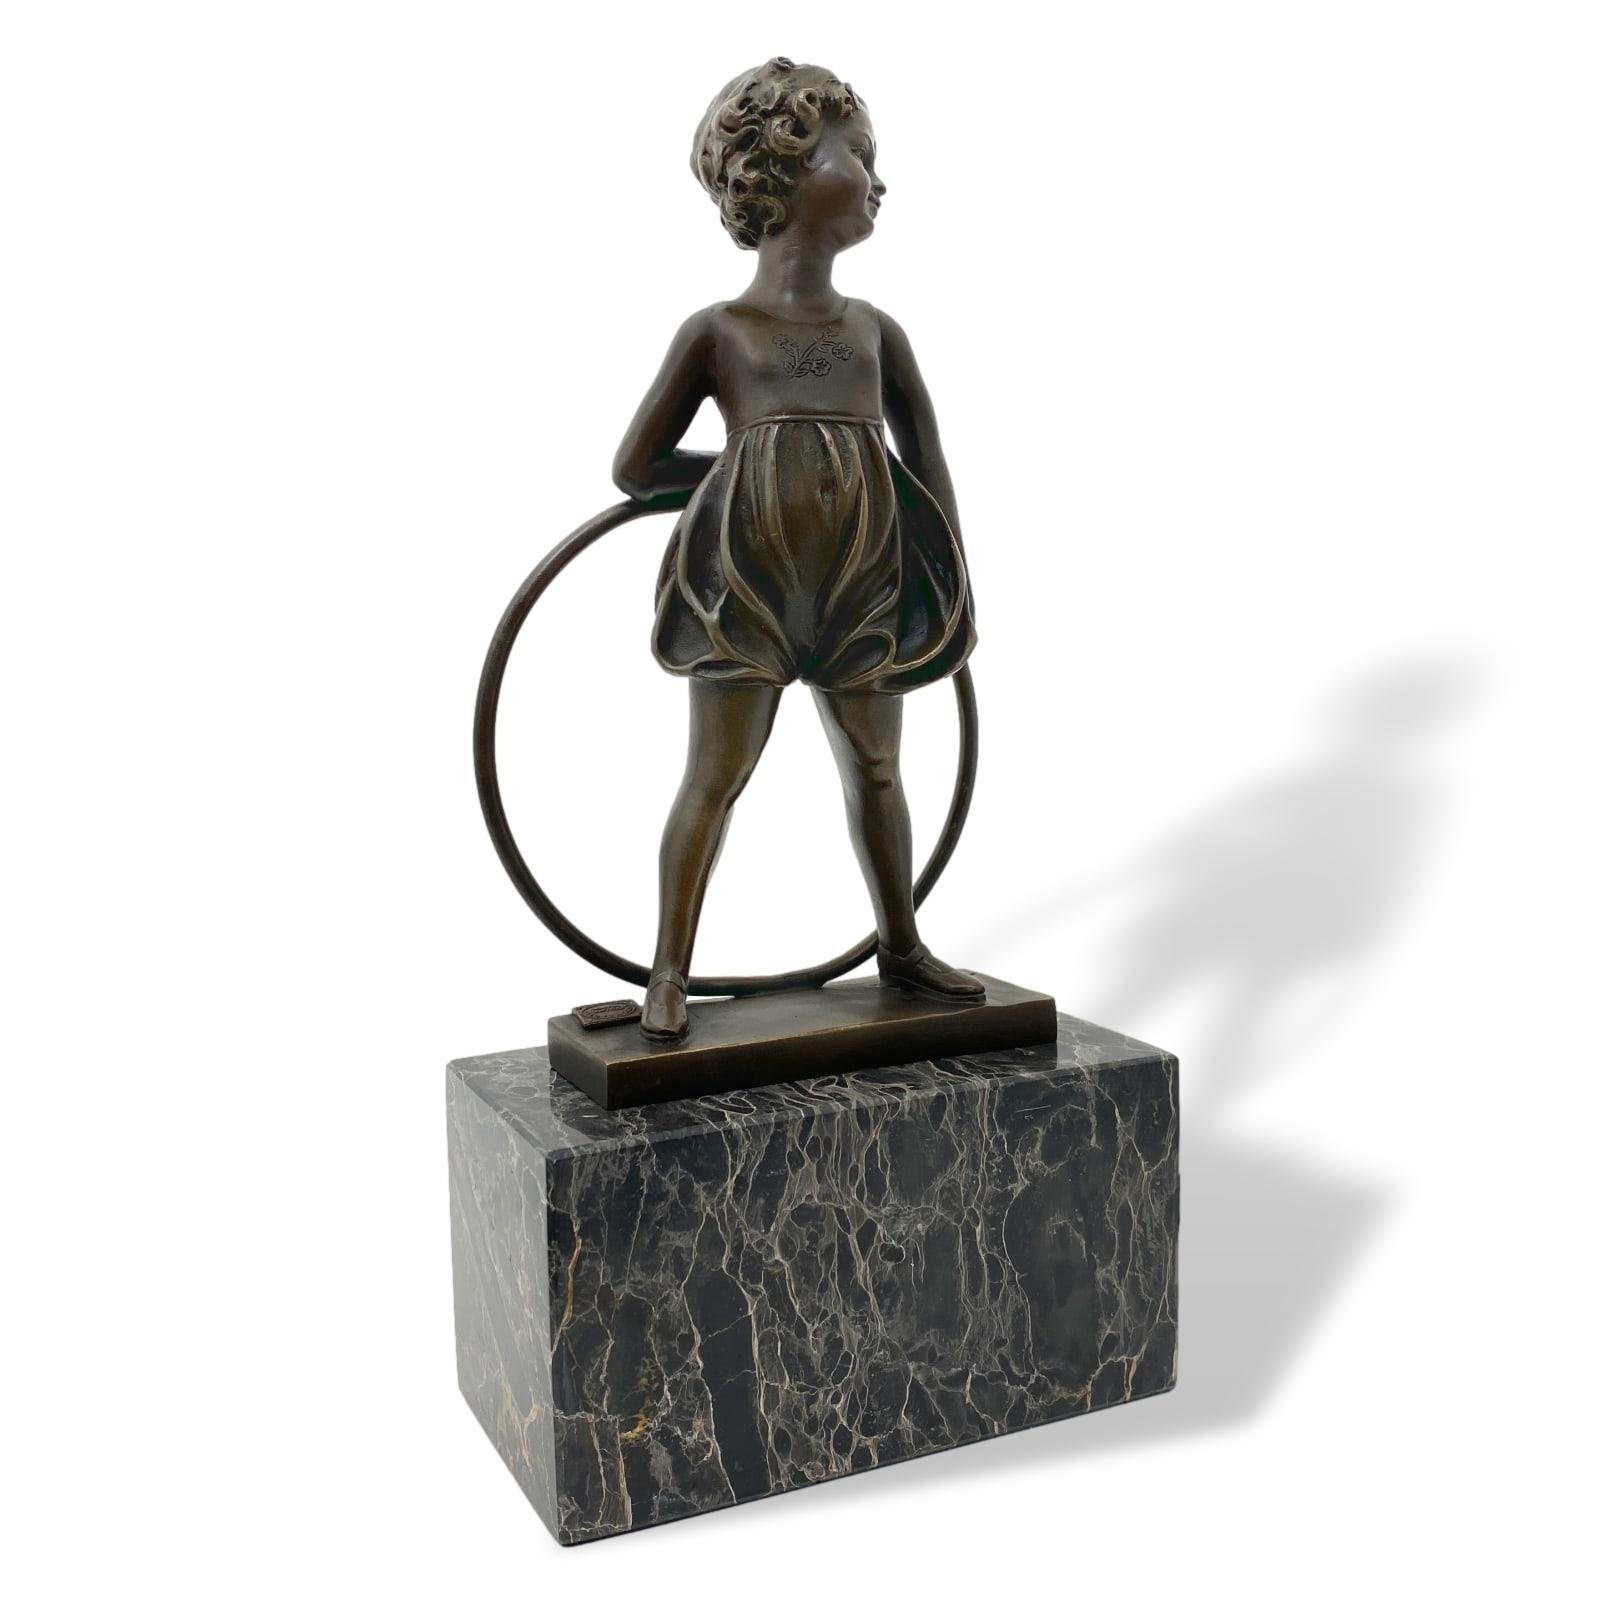 Aubaho Skulptur Bronzeskulptur Mädchen mit Hula Hoop Reifen im Antik-Stil Bronze Figur